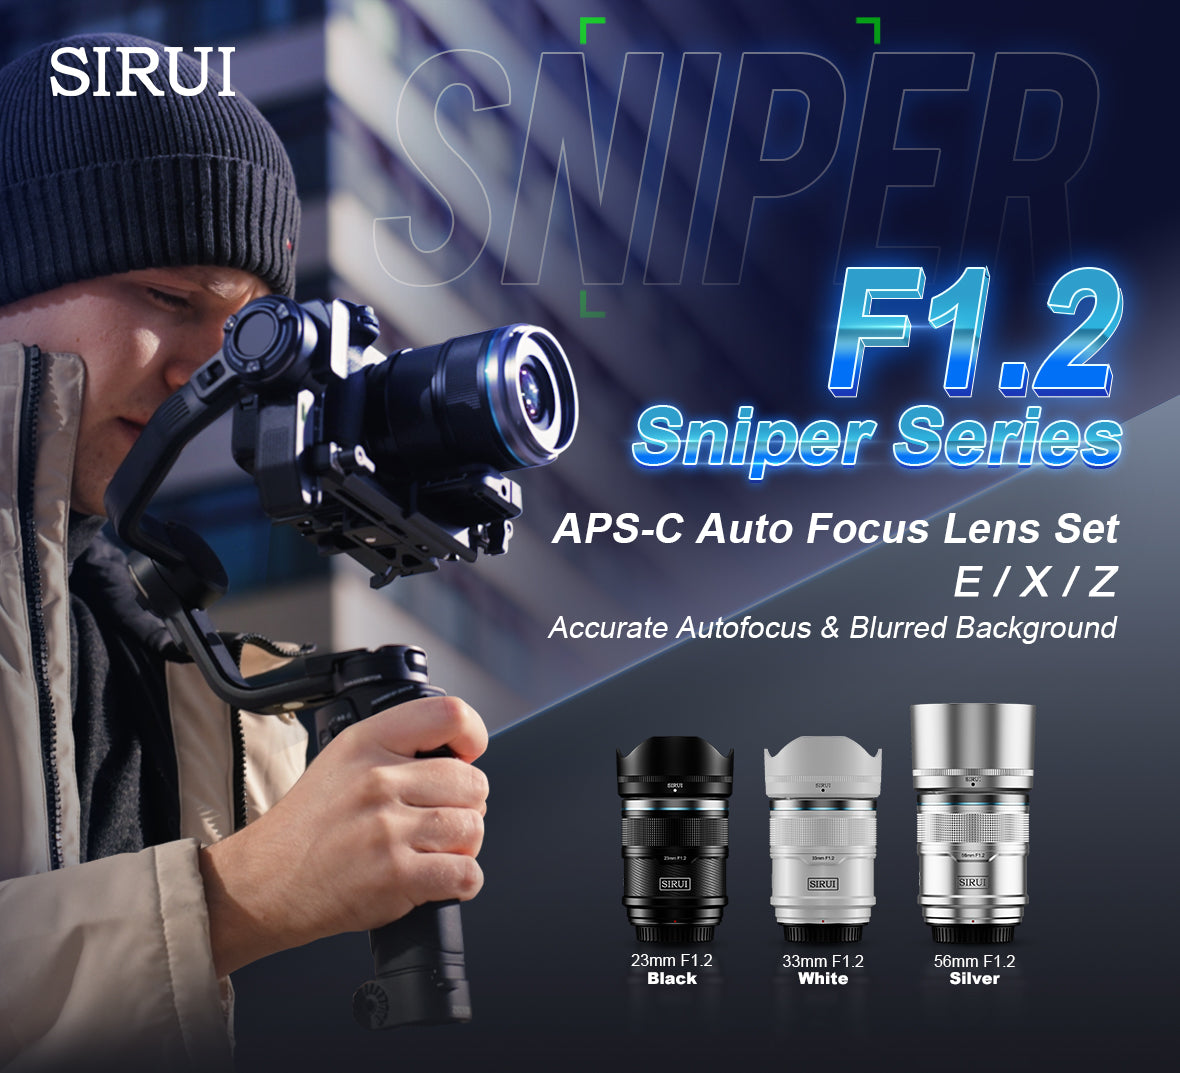 このスナイパーシリーズ APS-C f1.2 オートフォーカス レンズ セットには、23mm、33mm、56mm の焦点距離レンズが含まれています。E/X/Z マウントが付属しています（Nikon、Sony、Fujifilm カメラと互換性があります）。オプションの色は黒、白、シルバーの 3 色です。